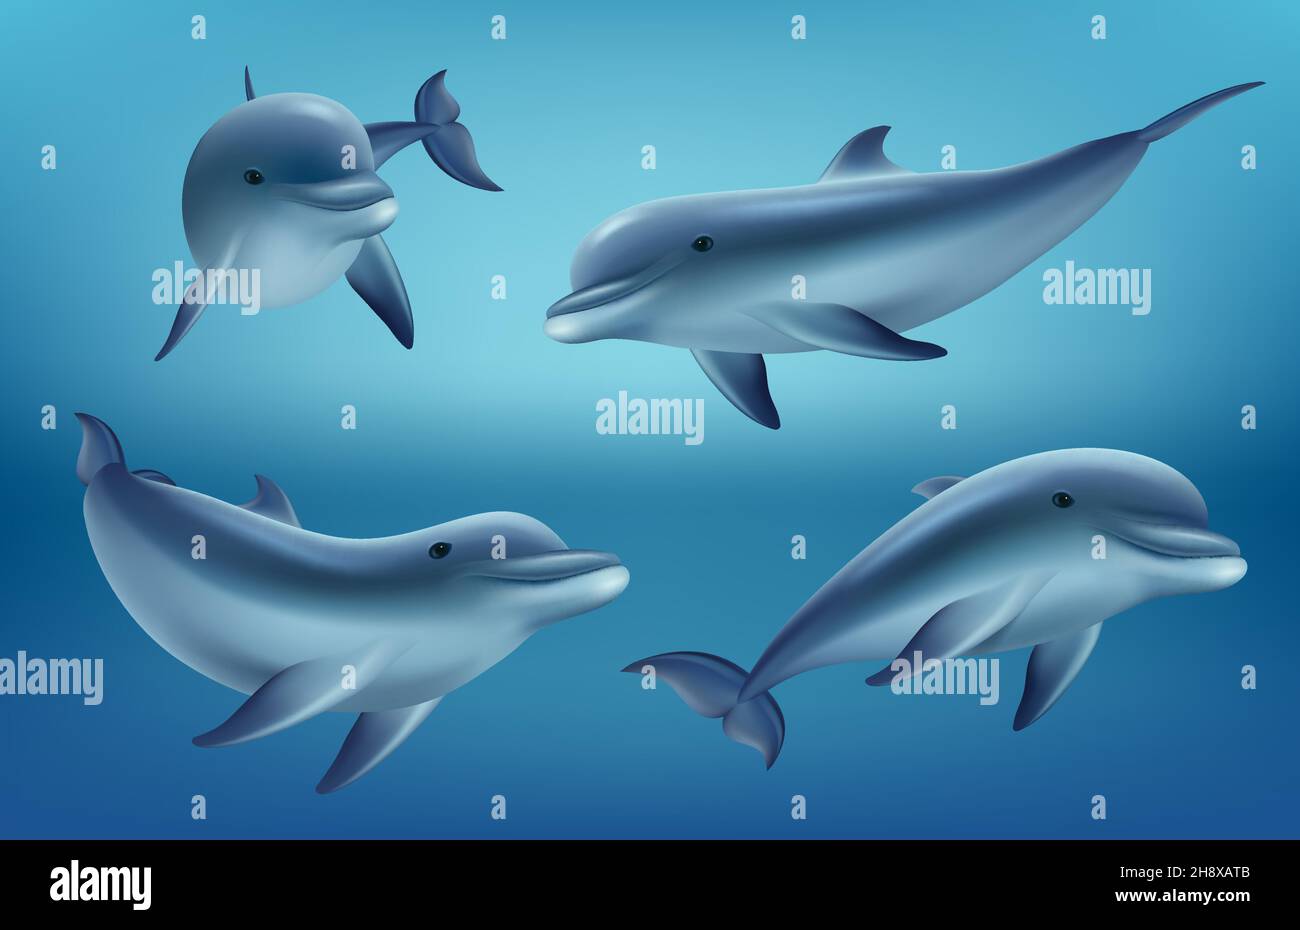 Delfine realistisch. Meer- oder Meerestiere schwimmen Fische mit Flossen tiefblaues Meer Unterwasserfauna anständige Vektor realistische Delphine Sammlung Stock Vektor